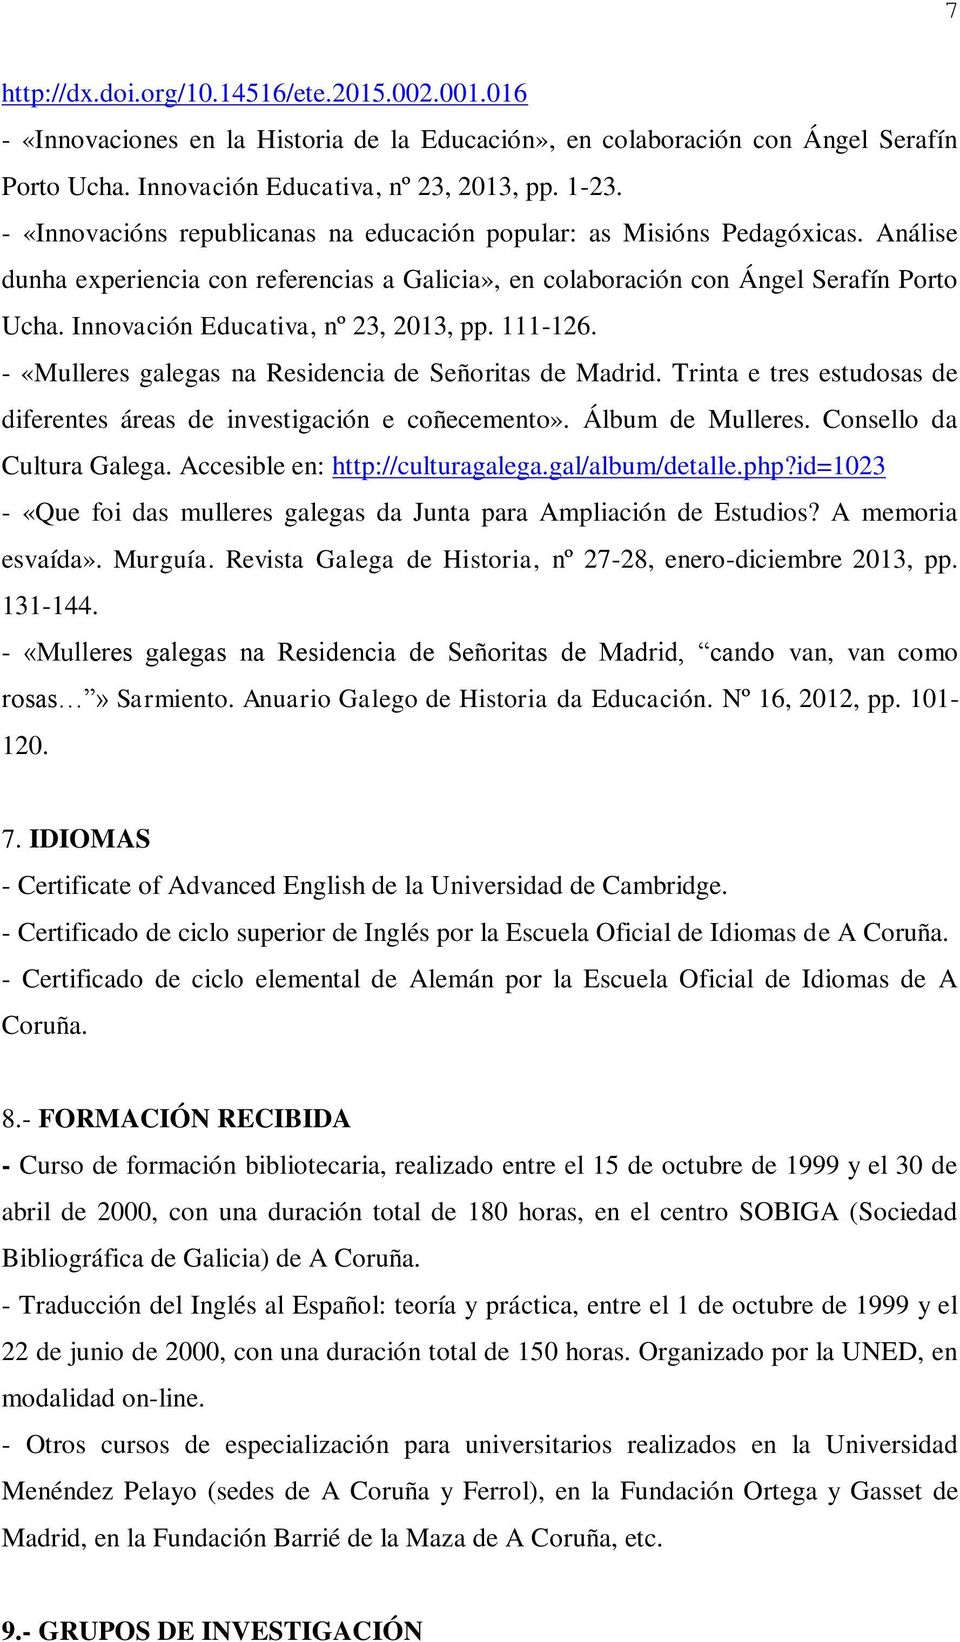 Innovación Educativa, nº 23, 2013, pp. 111-126. - «Mulleres galegas na Residencia de Señoritas de Madrid. Trinta e tres estudosas de diferentes áreas de investigación e coñecemento».